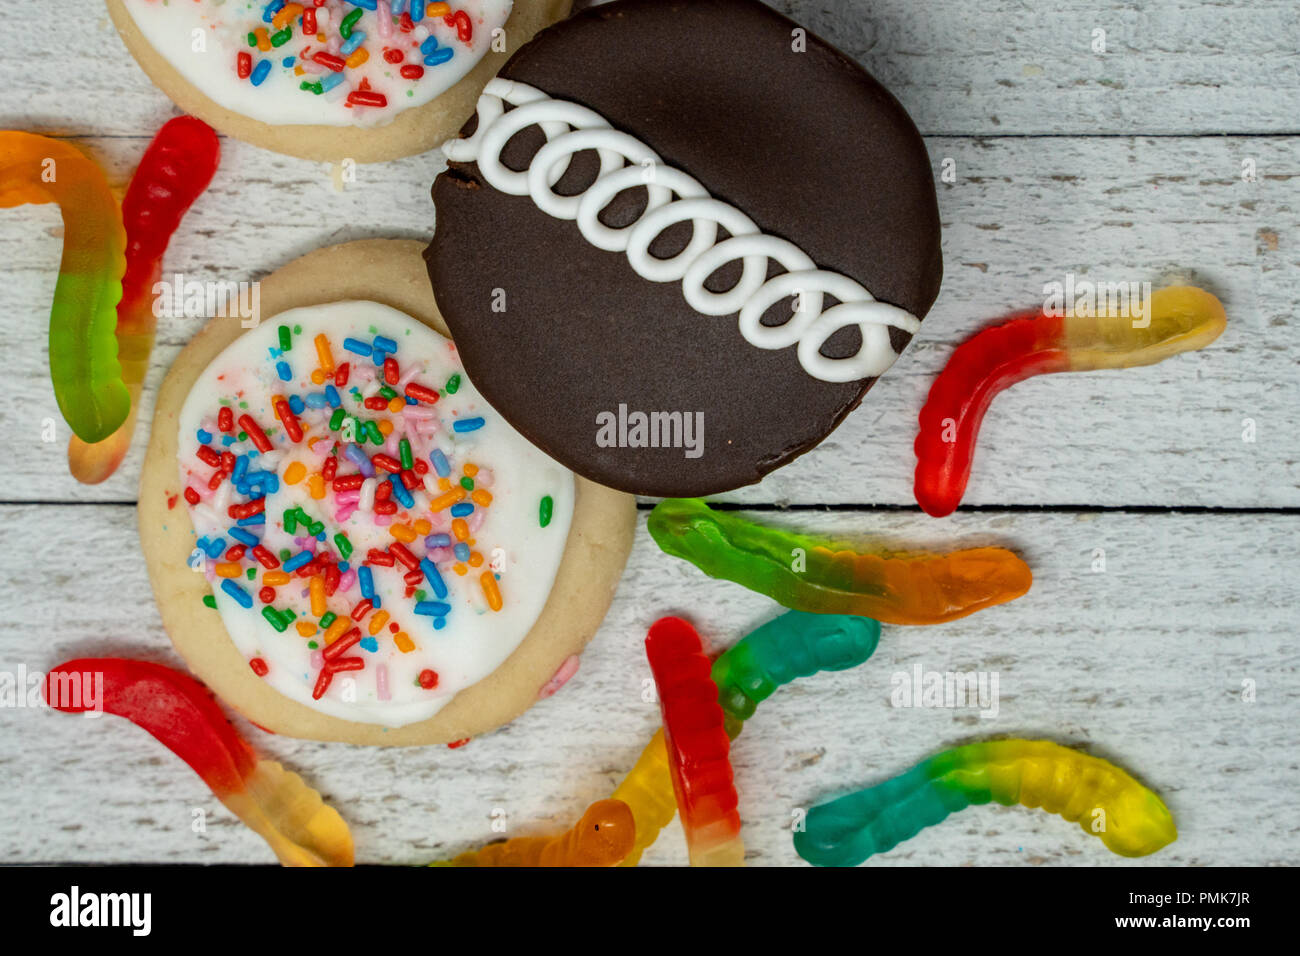 Schokolade Kuchen, Eis frosted Sugar Cookies mit Streuseln und Gummibärchen Würmer auf Holz- Hintergrund Stockfoto